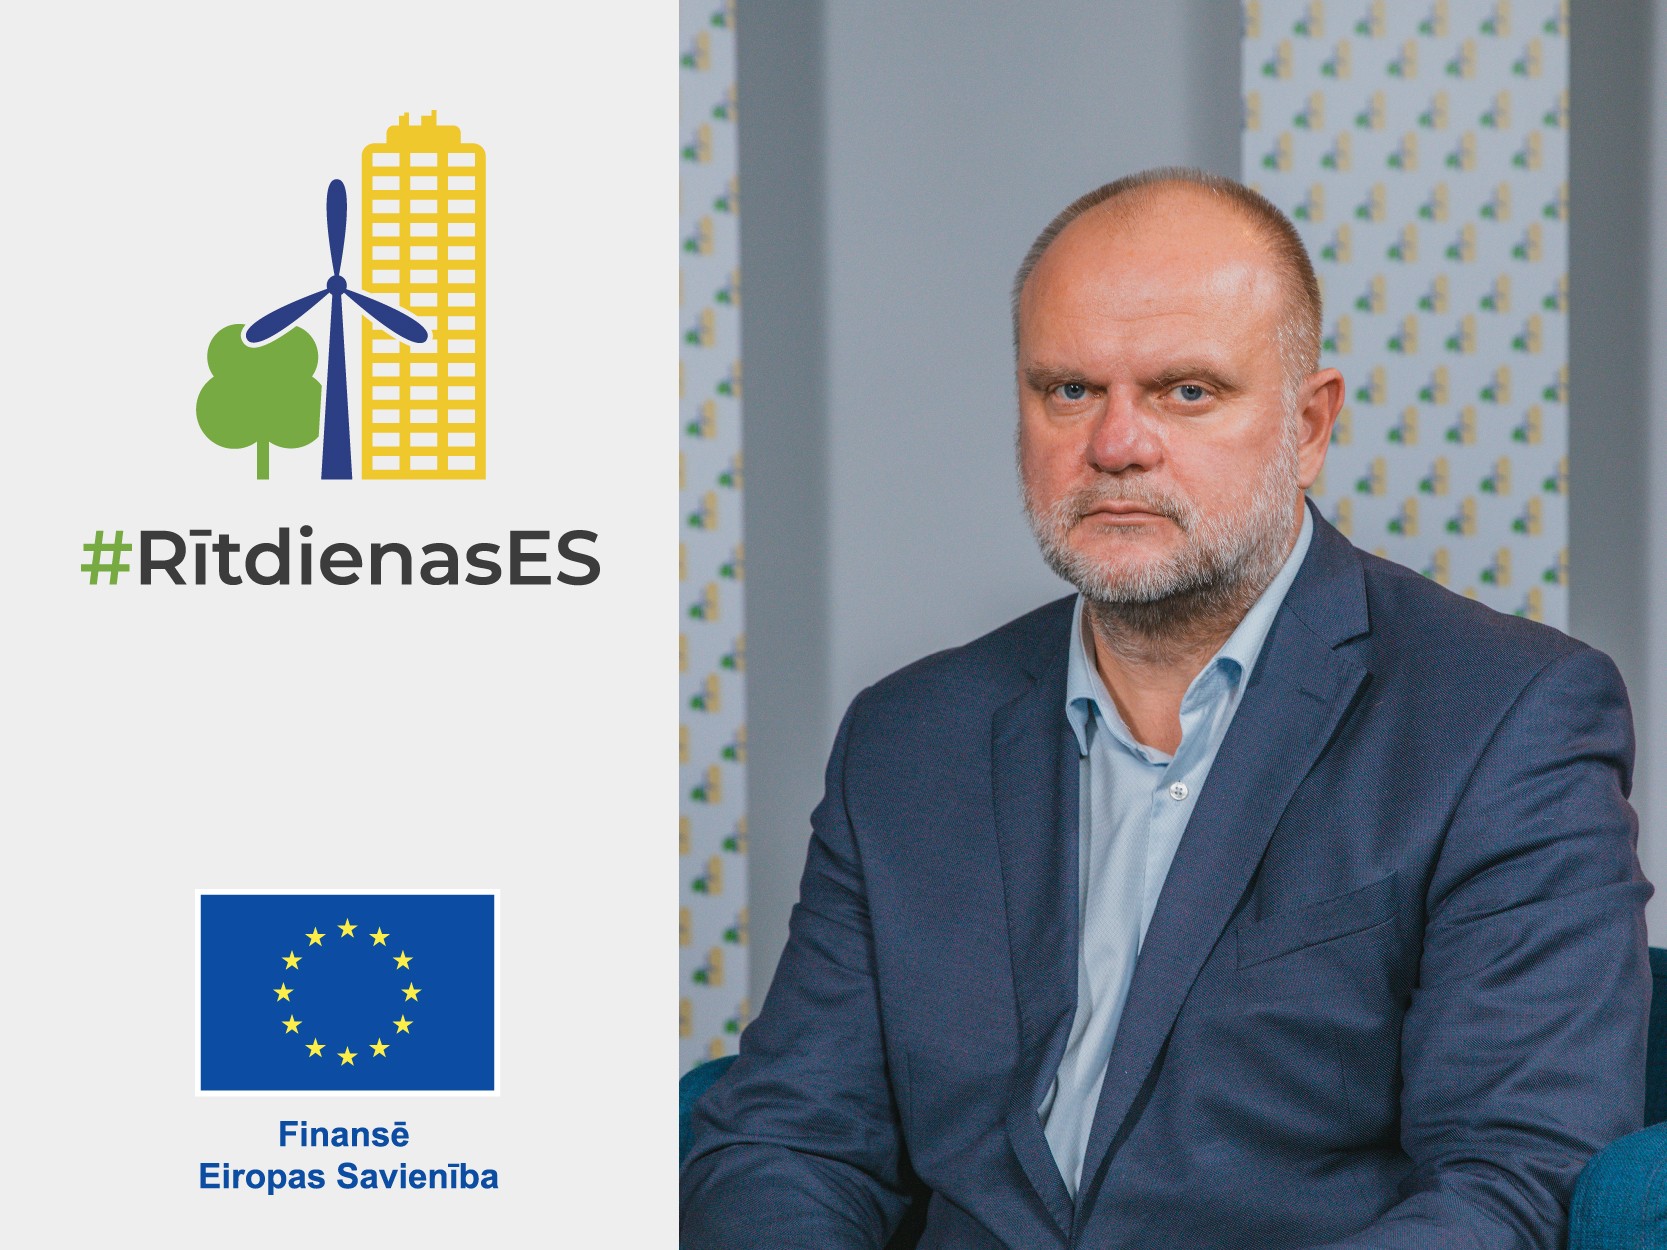 Rītdienas ES | Kaspars Kauliņš | Digitālie risinājumi uzņēmējdarbībā